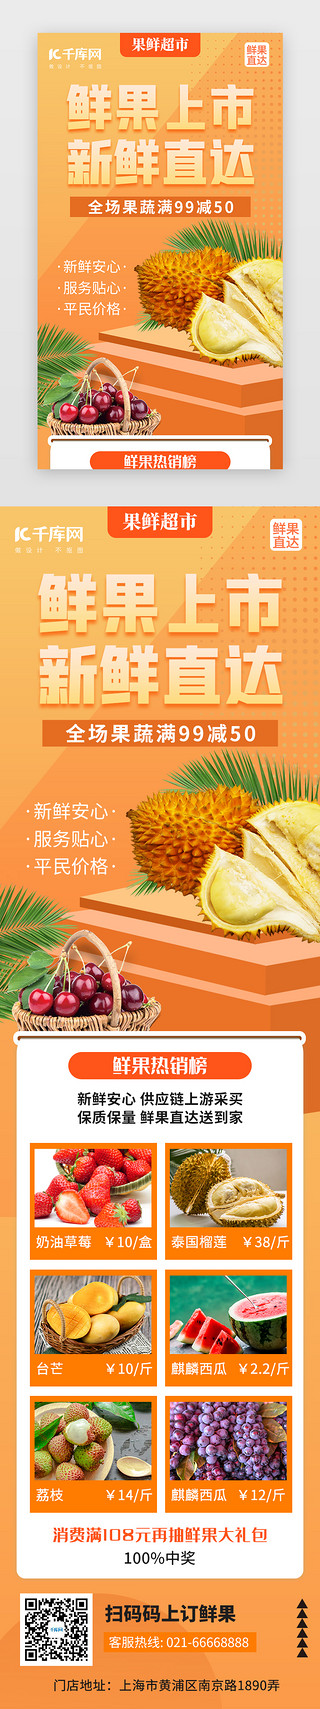 生鲜水果促销海报UI设计素材_鲜果上市促销活动H5